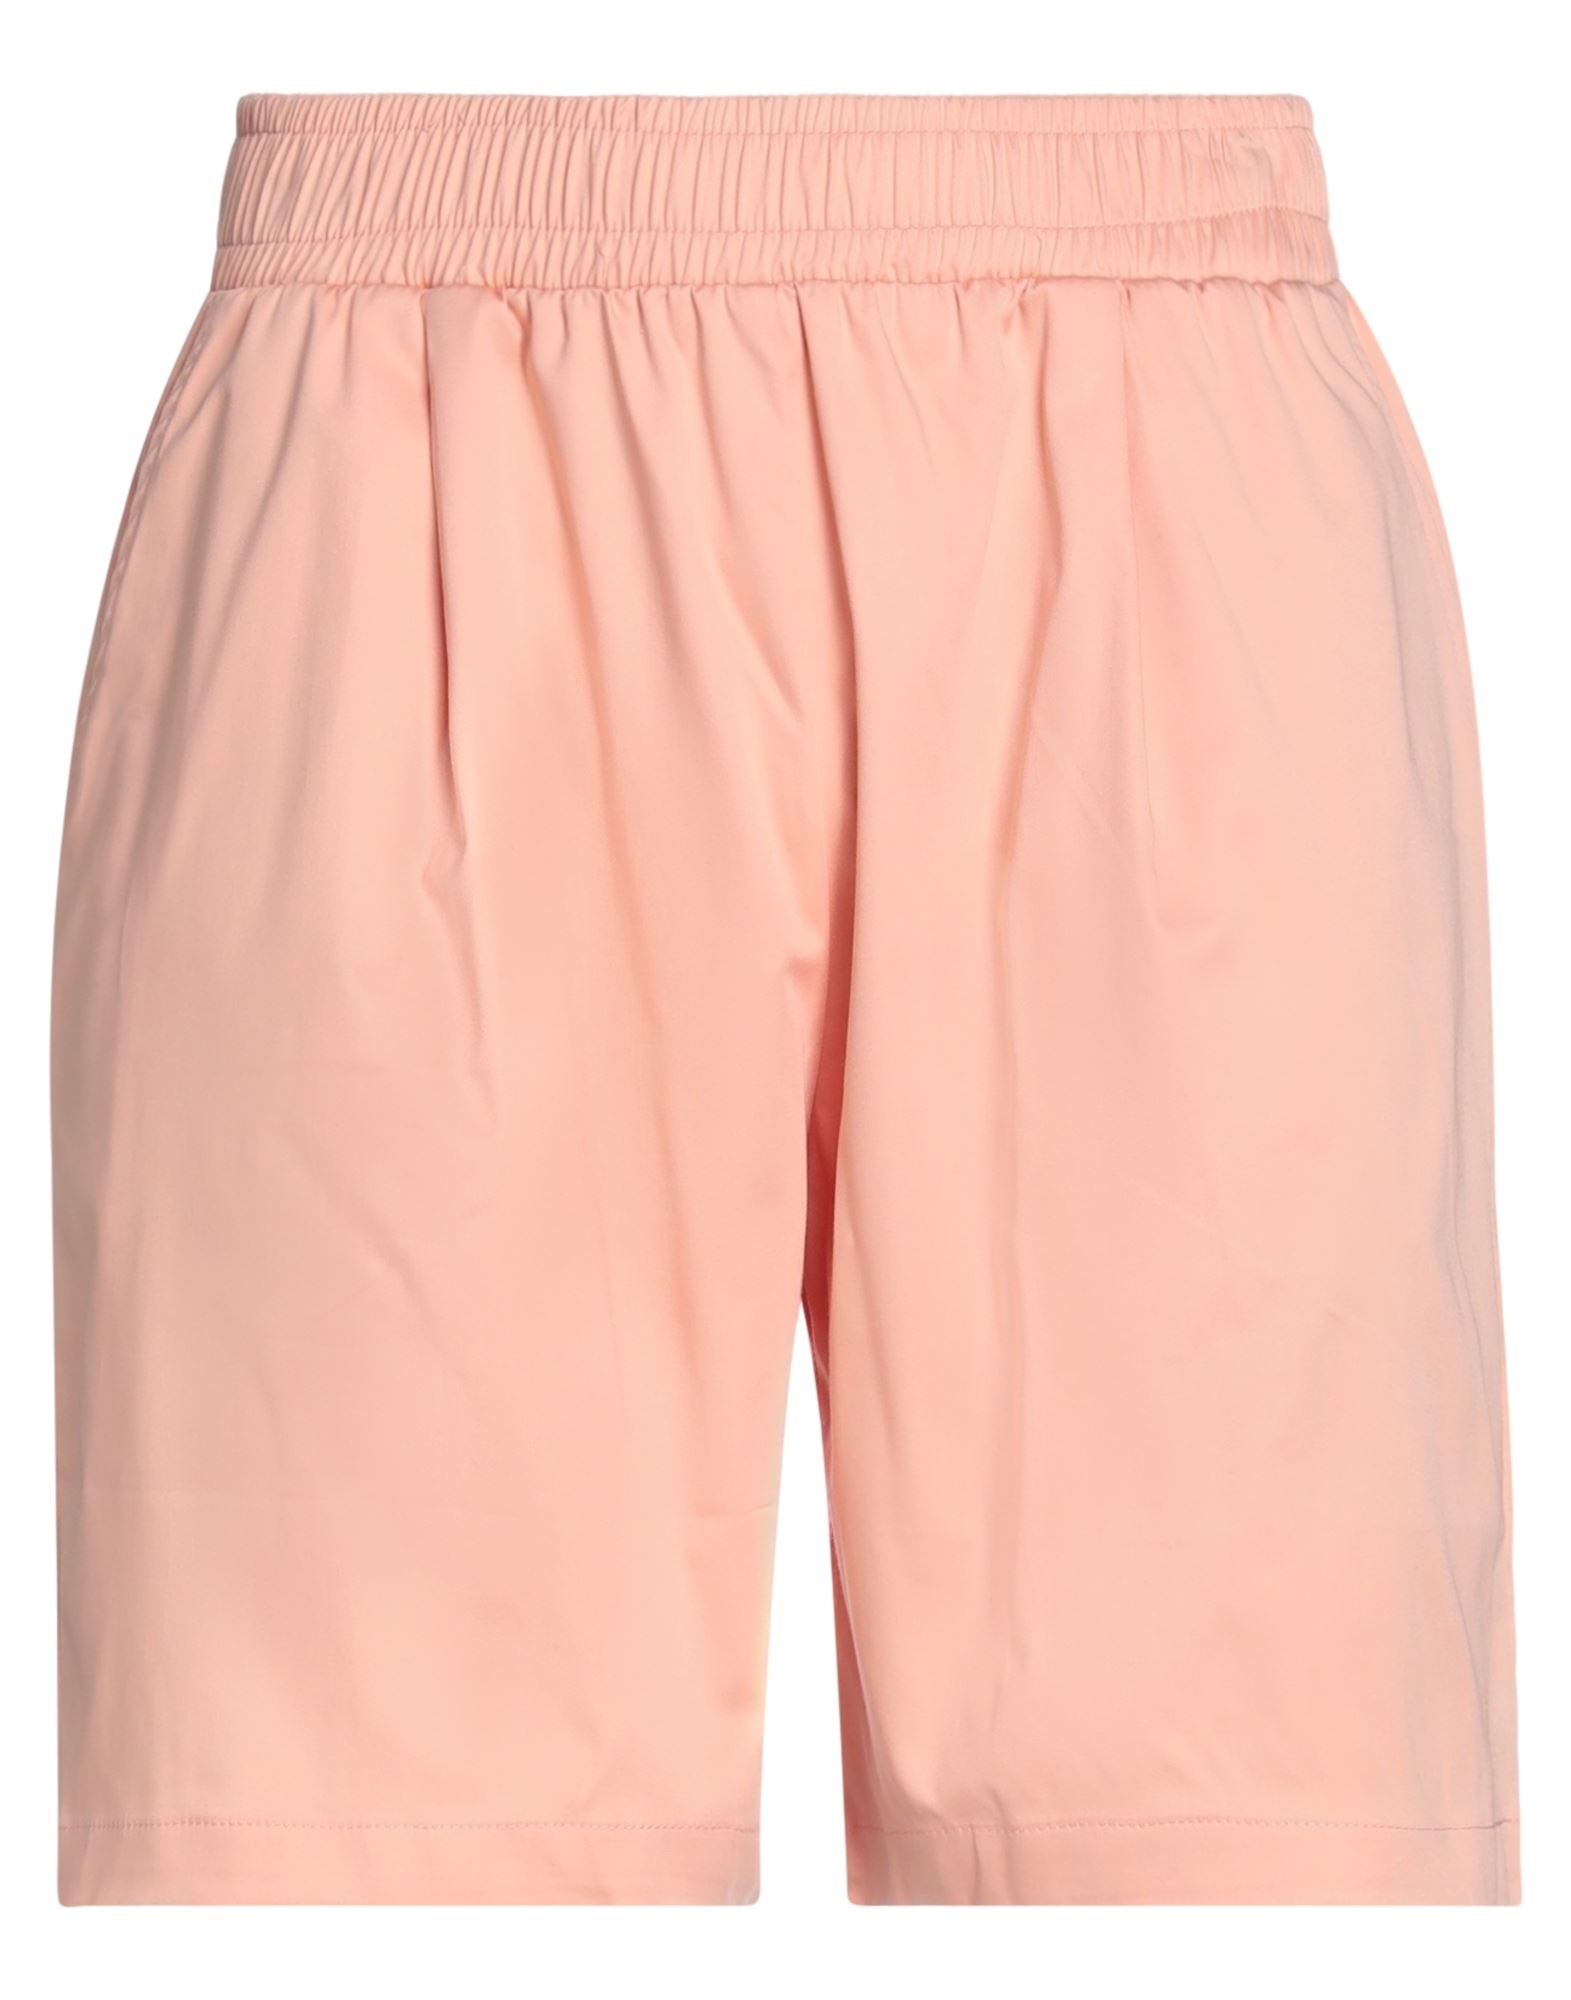 Family First Milano Man Shorts & Bermuda Shorts Pink Size M Cotton, Elastane